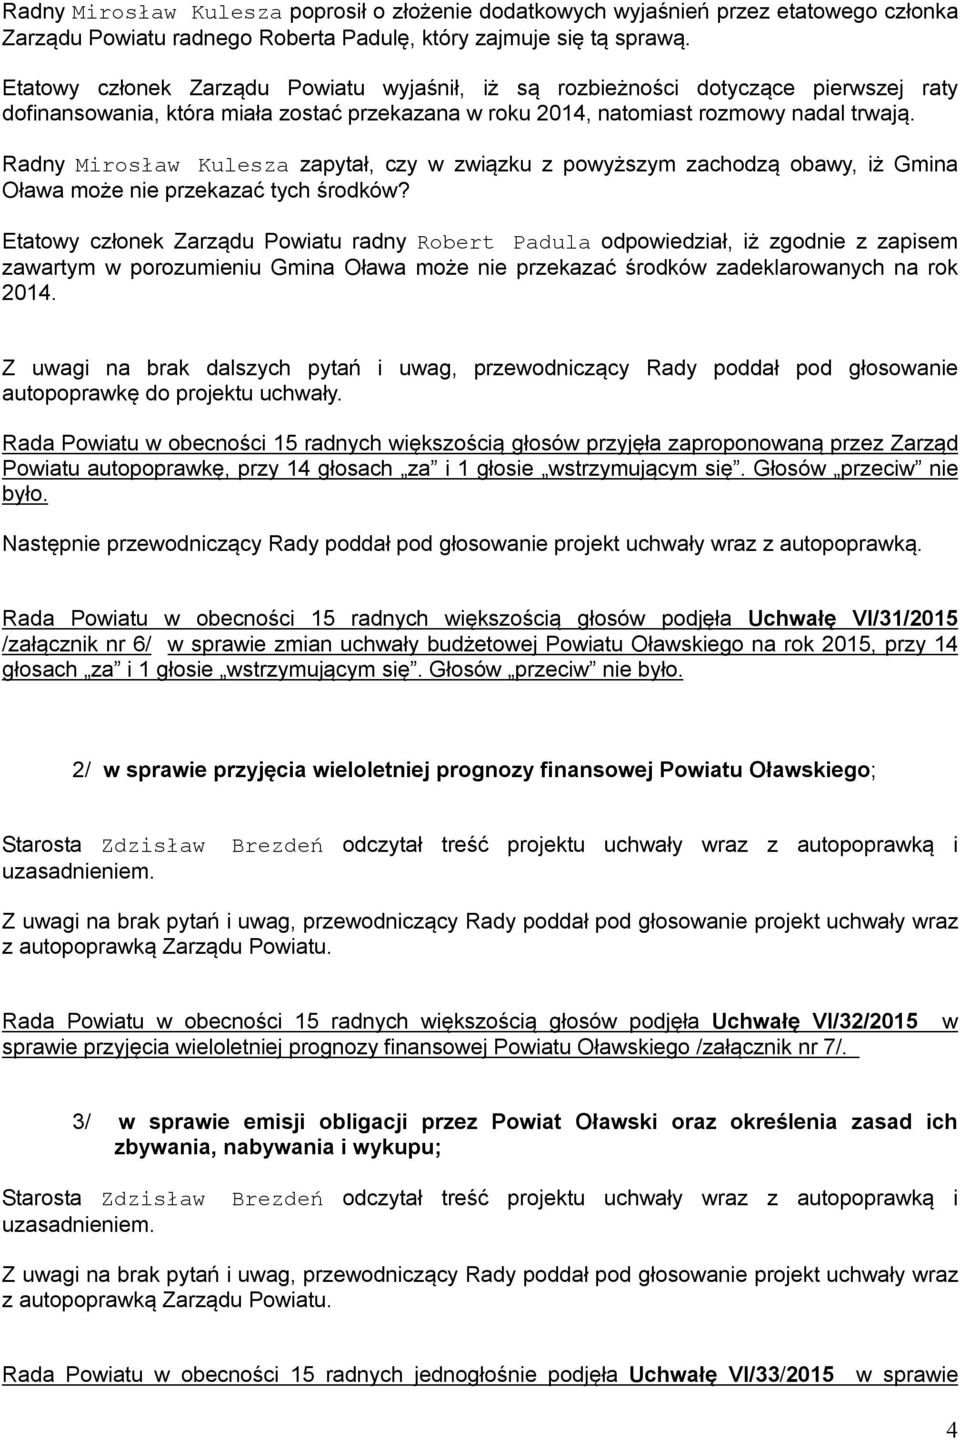 Radny Mirosław Kulesza zapytał, czy w związku z powyższym zachodzą obawy, iż Gmina Oława może nie przekazać tych środków?